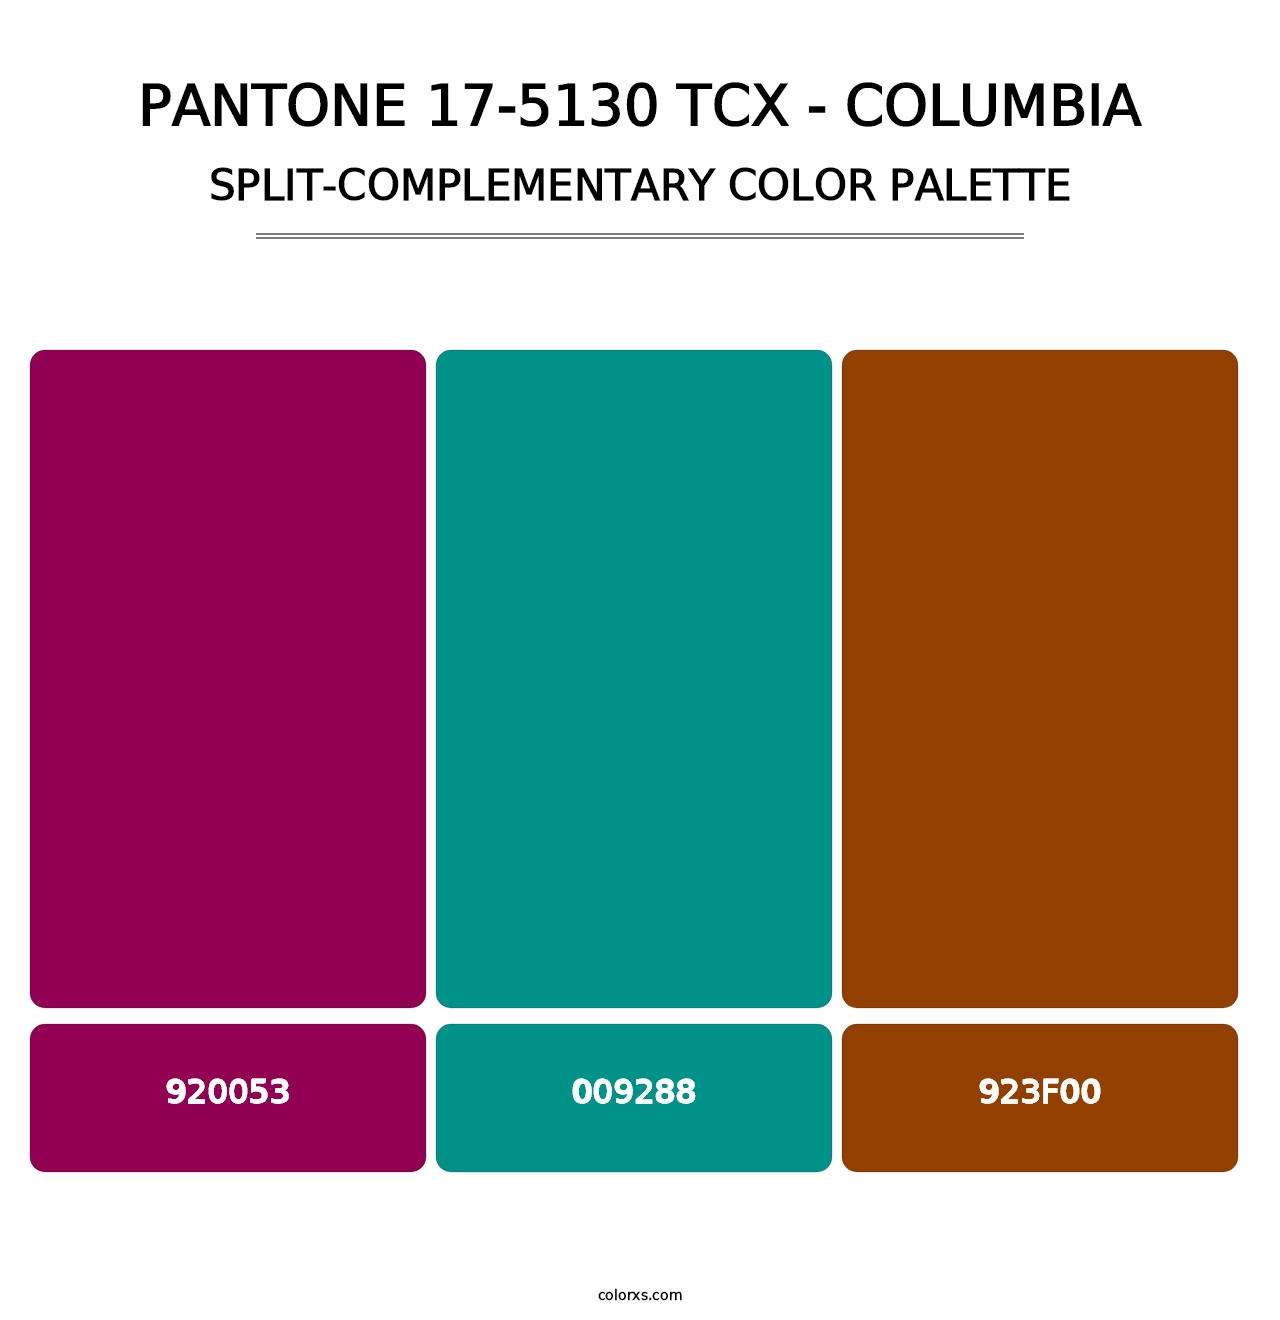 PANTONE 17-5130 TCX - Columbia - Split-Complementary Color Palette